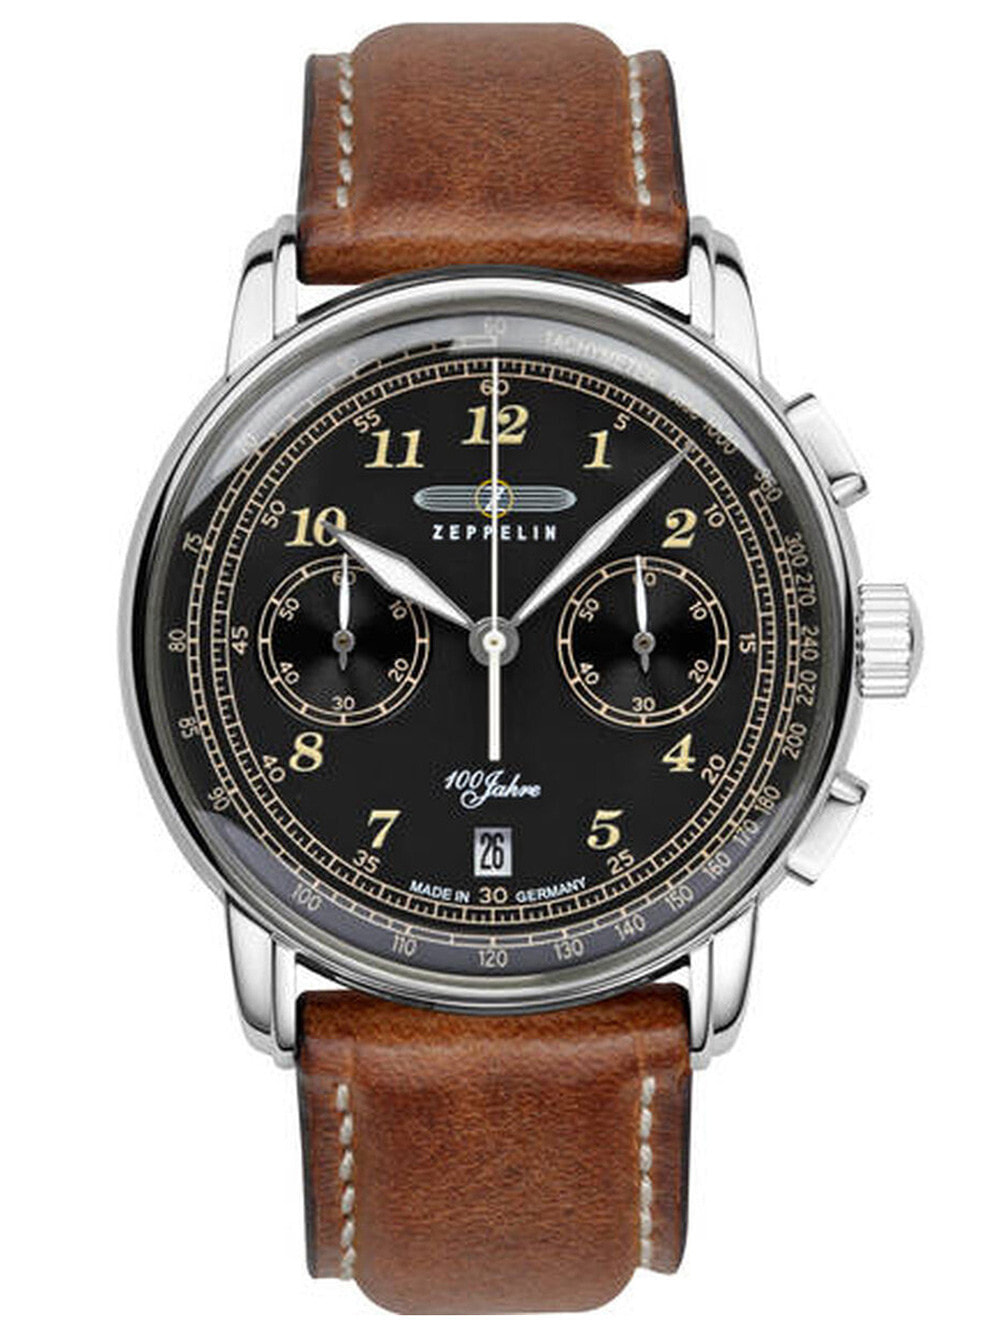 Мужские наручные часы с коричневым кожаным ремешком Zeppelin 7674-3 LZ-127 Chronograph 43mm 5ATM